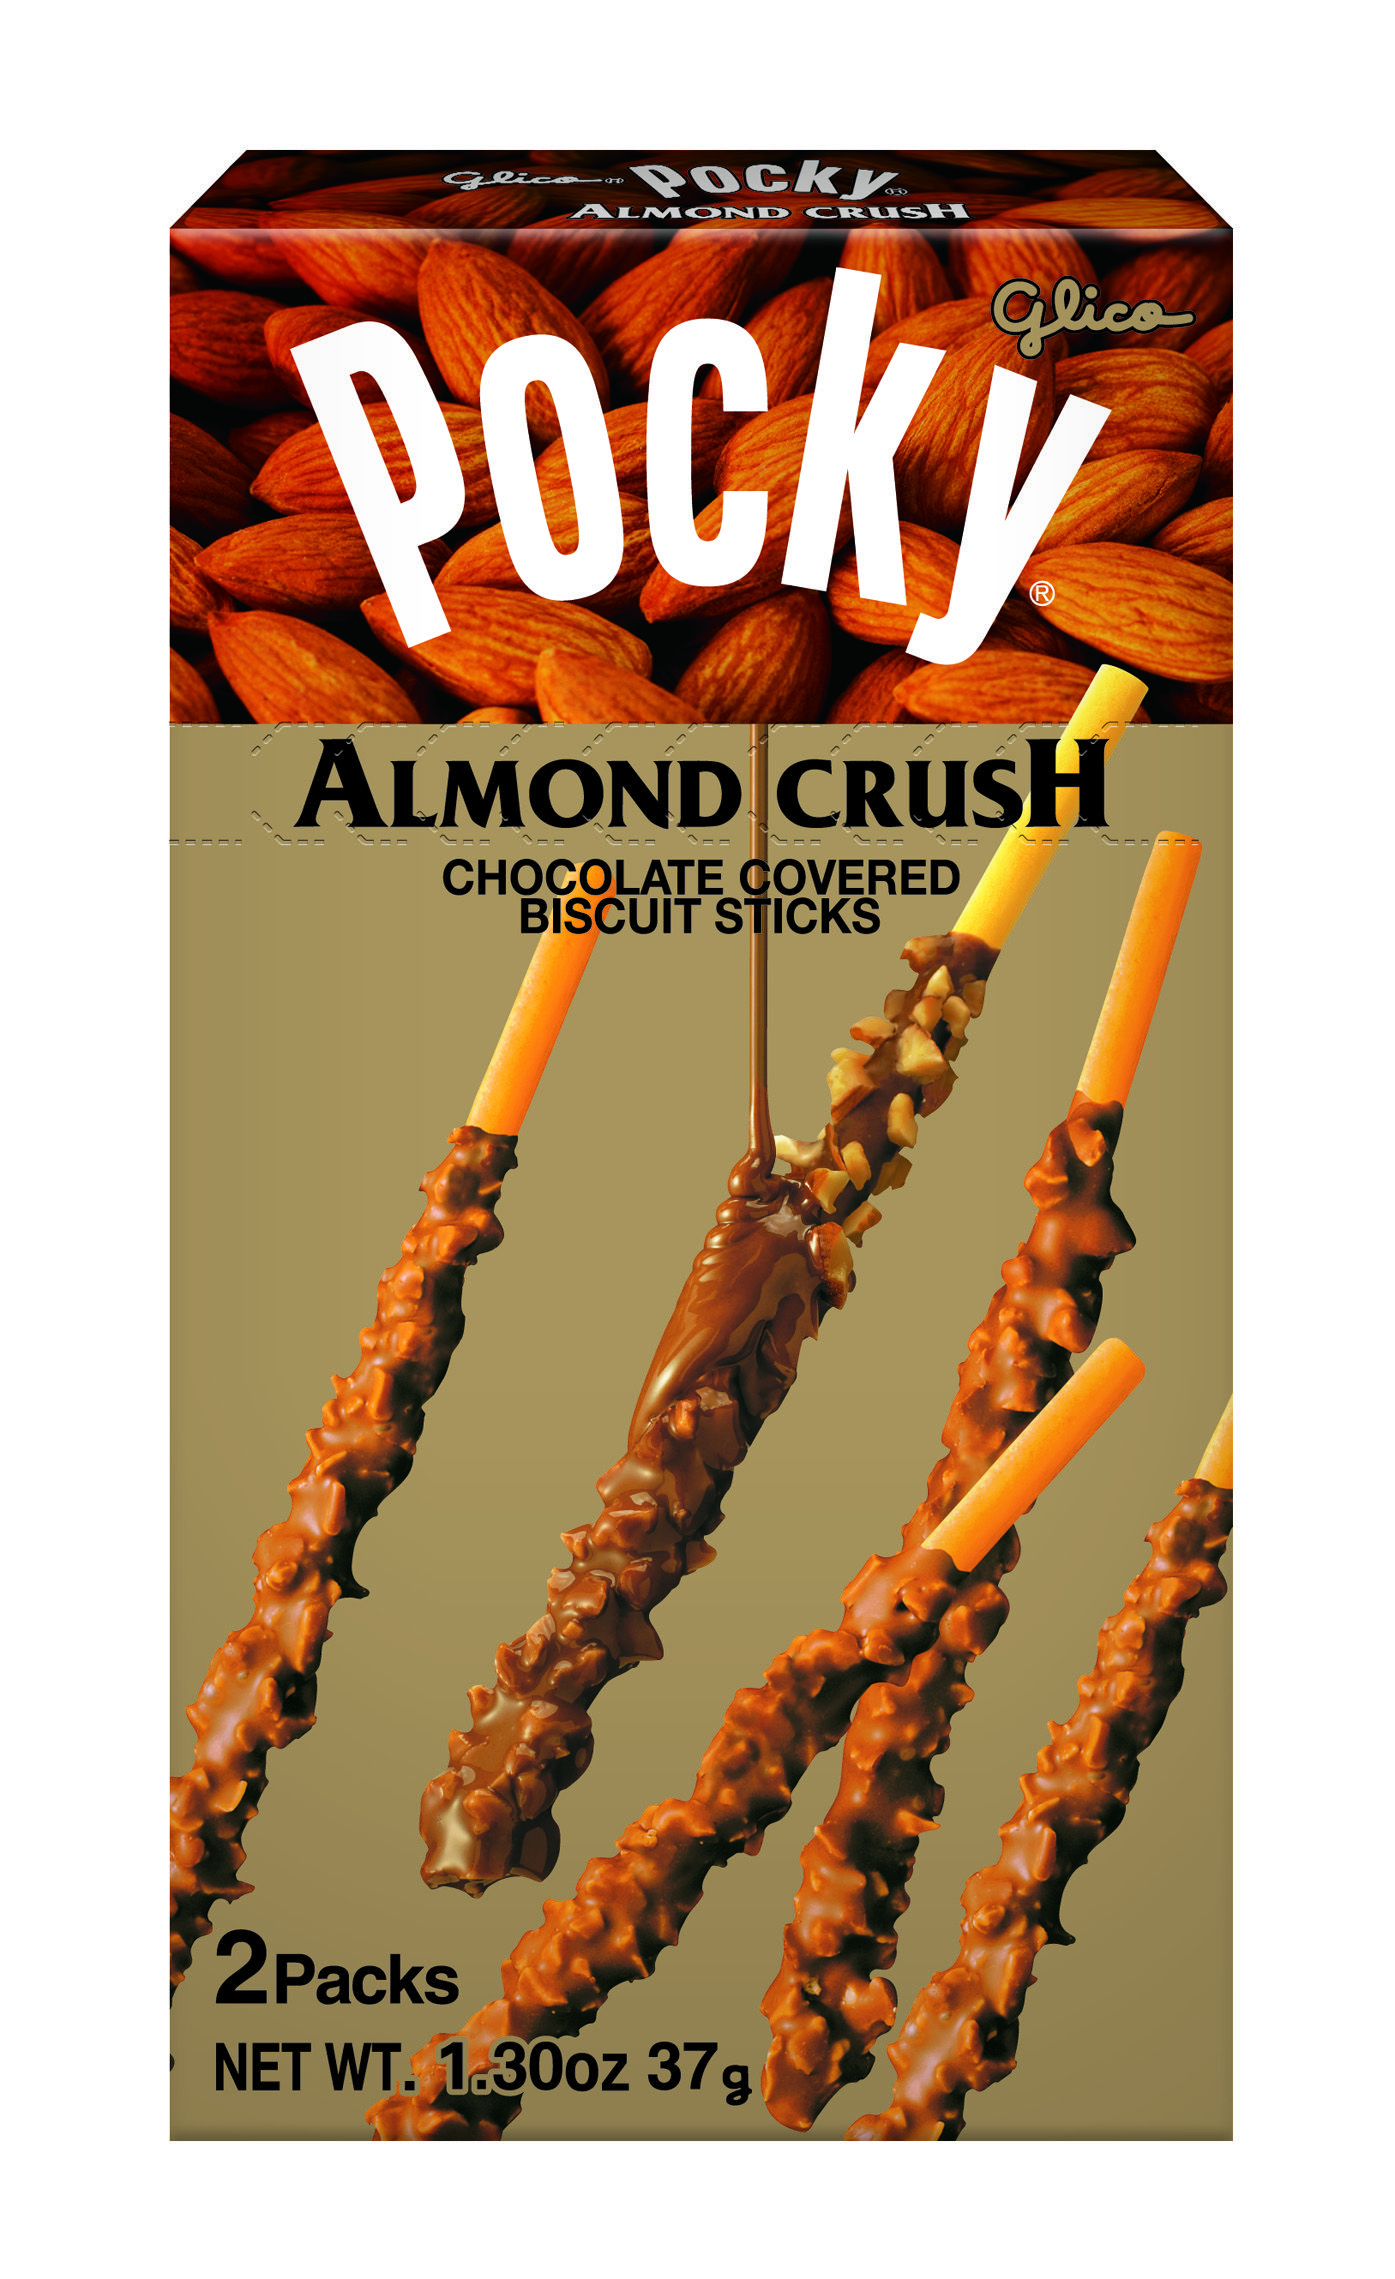 glico pocky almond crush